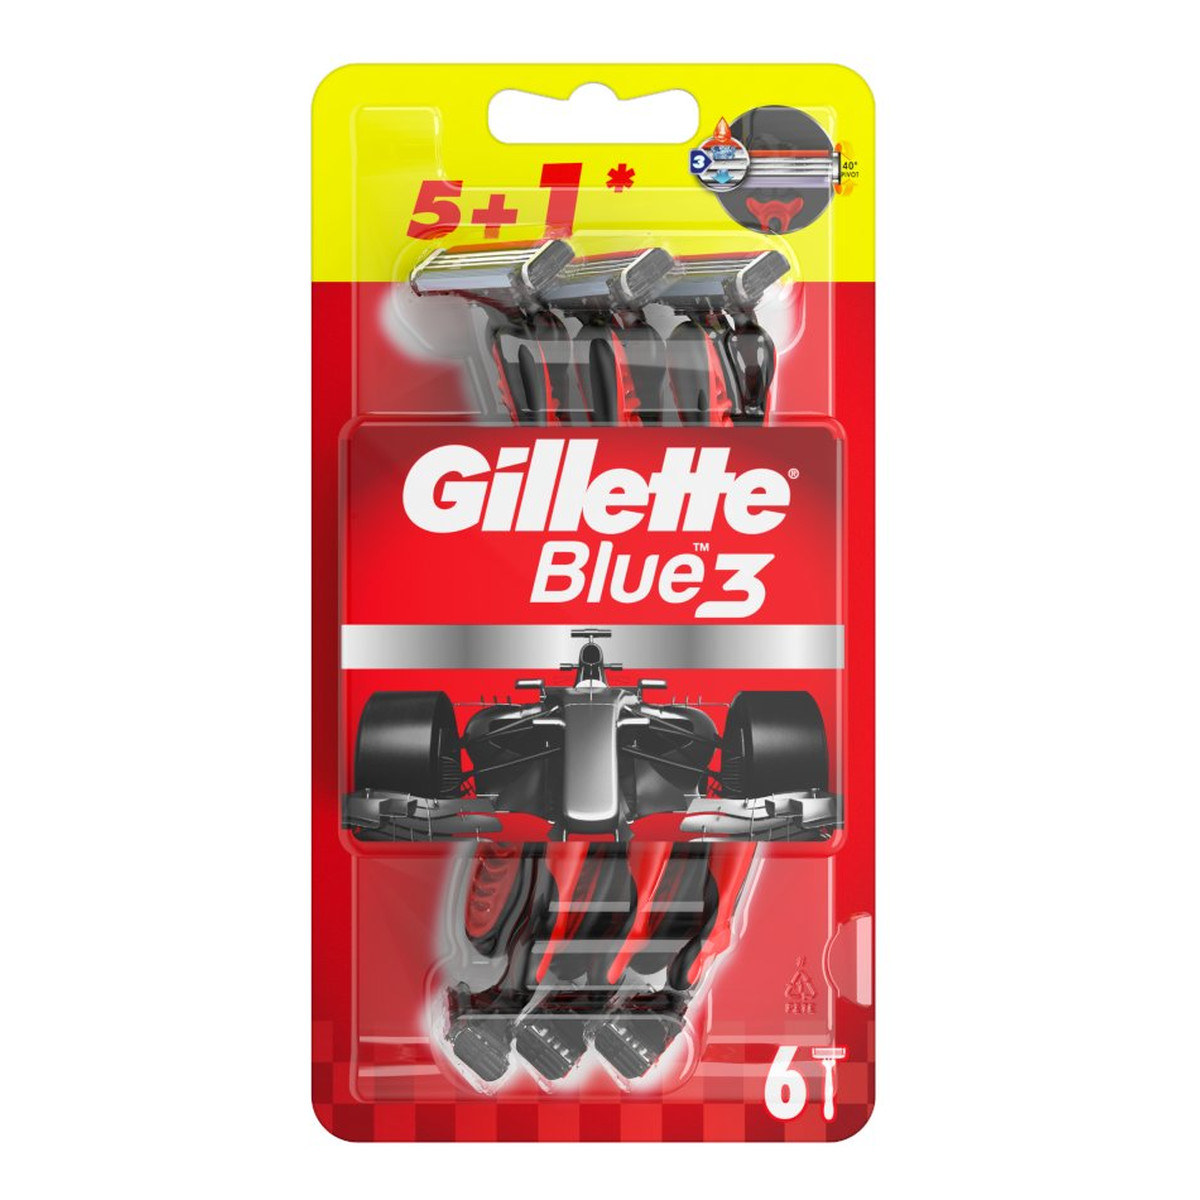 Gillette Blue3 Nitro Jednorazowa maszynka do golenia dla mężczyzn (5+1) White&red